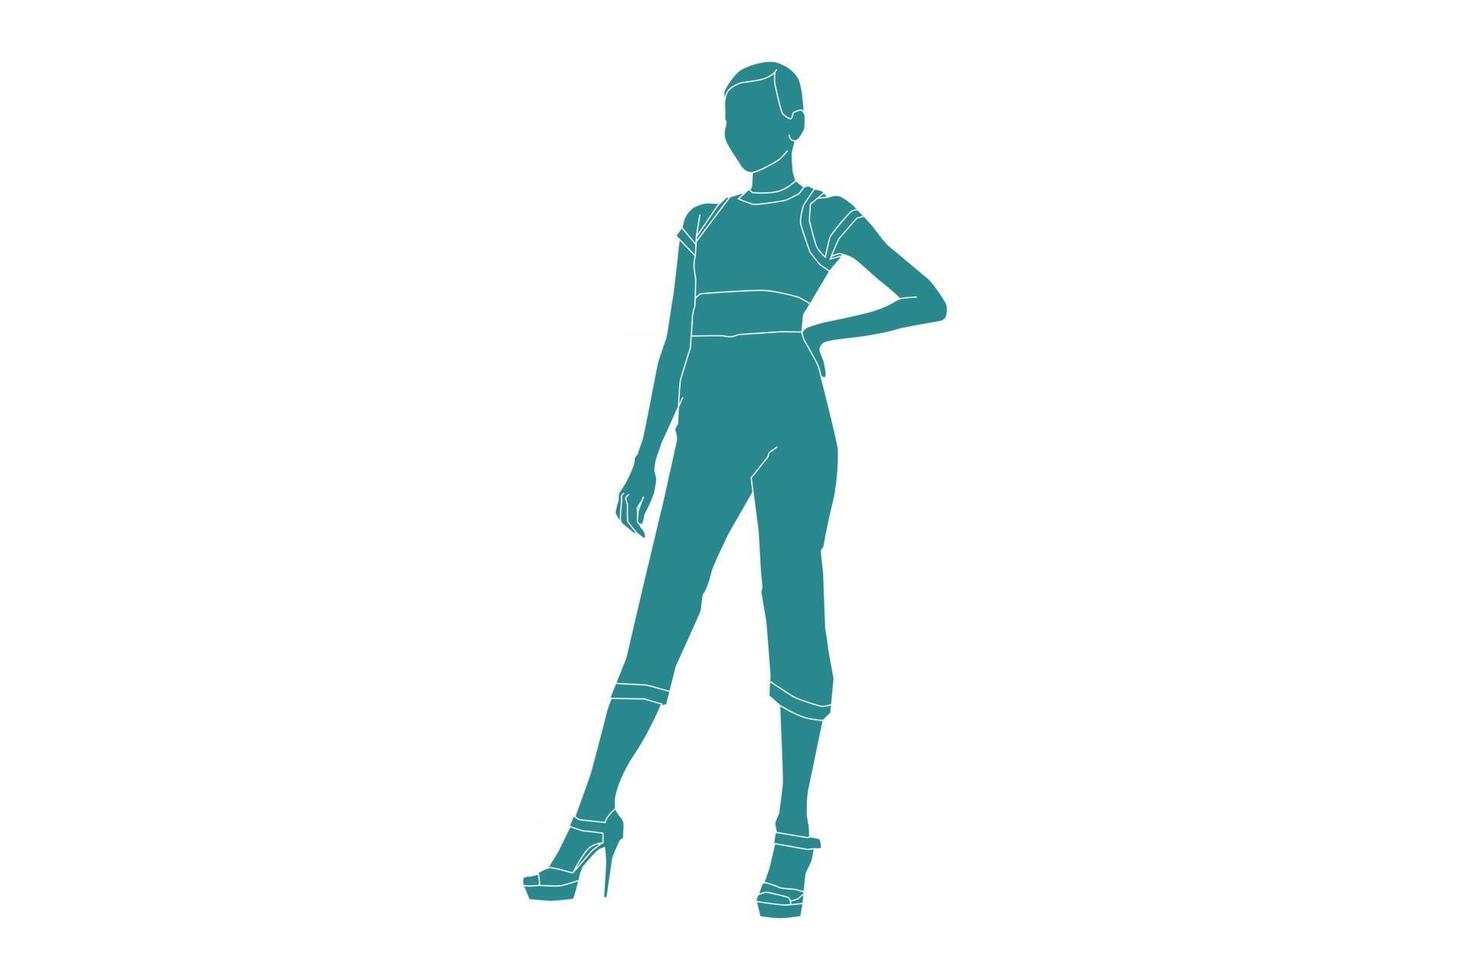 ilustração em vetor de mulher elegante posando de salto alto, estilo simples com contorno